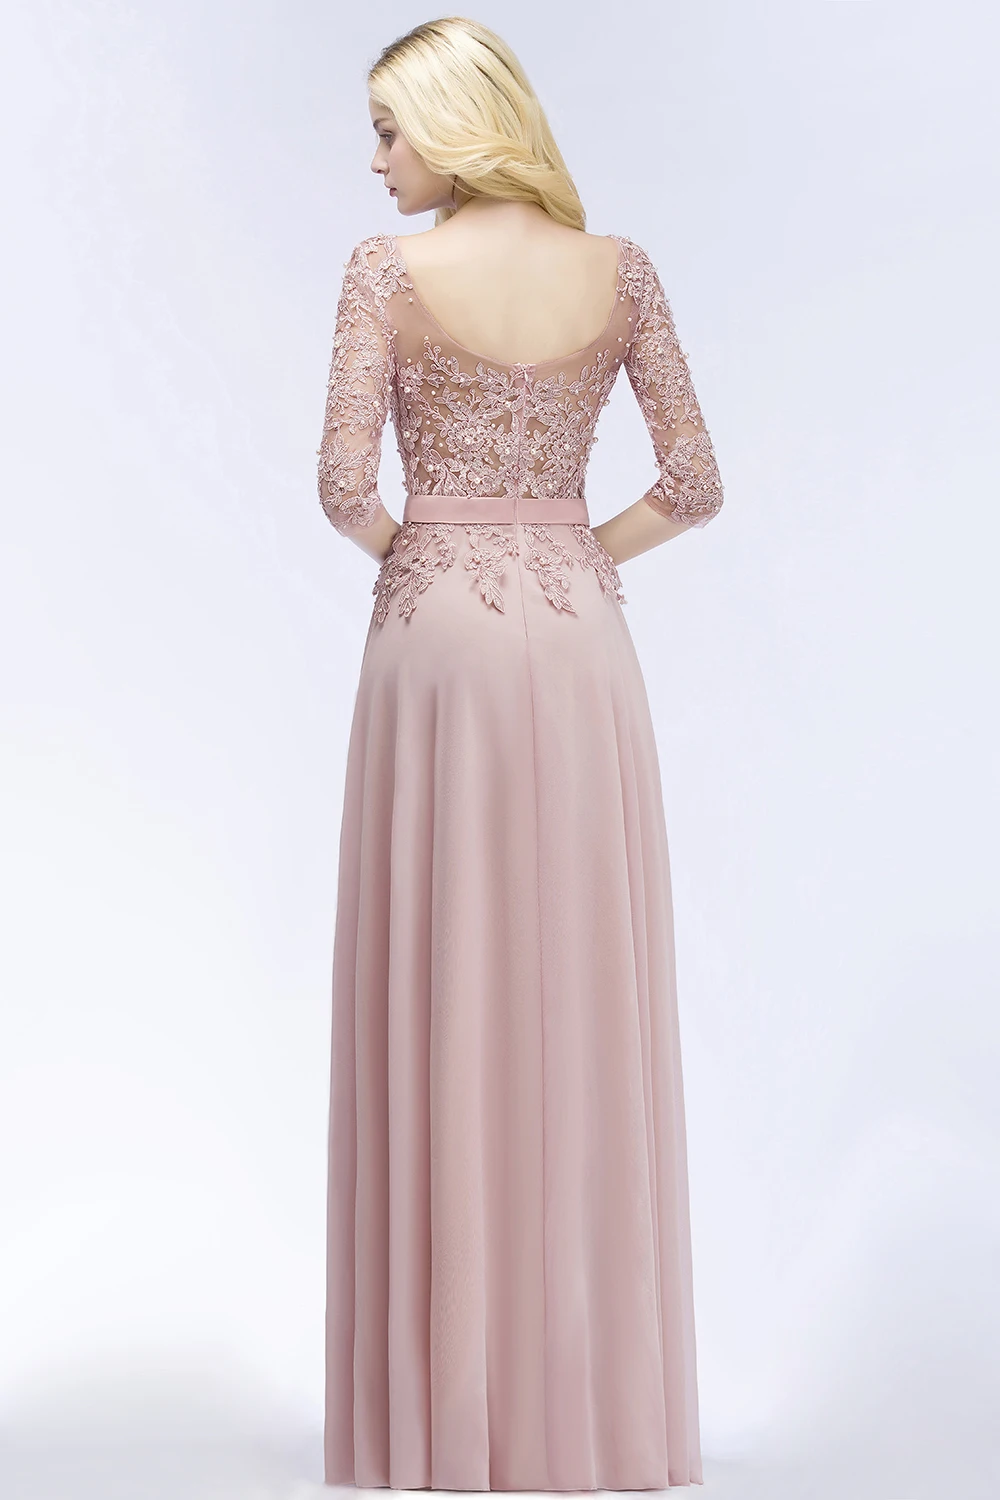 Misshow элегантные платья для выпускного вечера длинное розовое шифоновое платье с кружевной аппликацией и жемчугом с коротким рукавом vestidos de gala